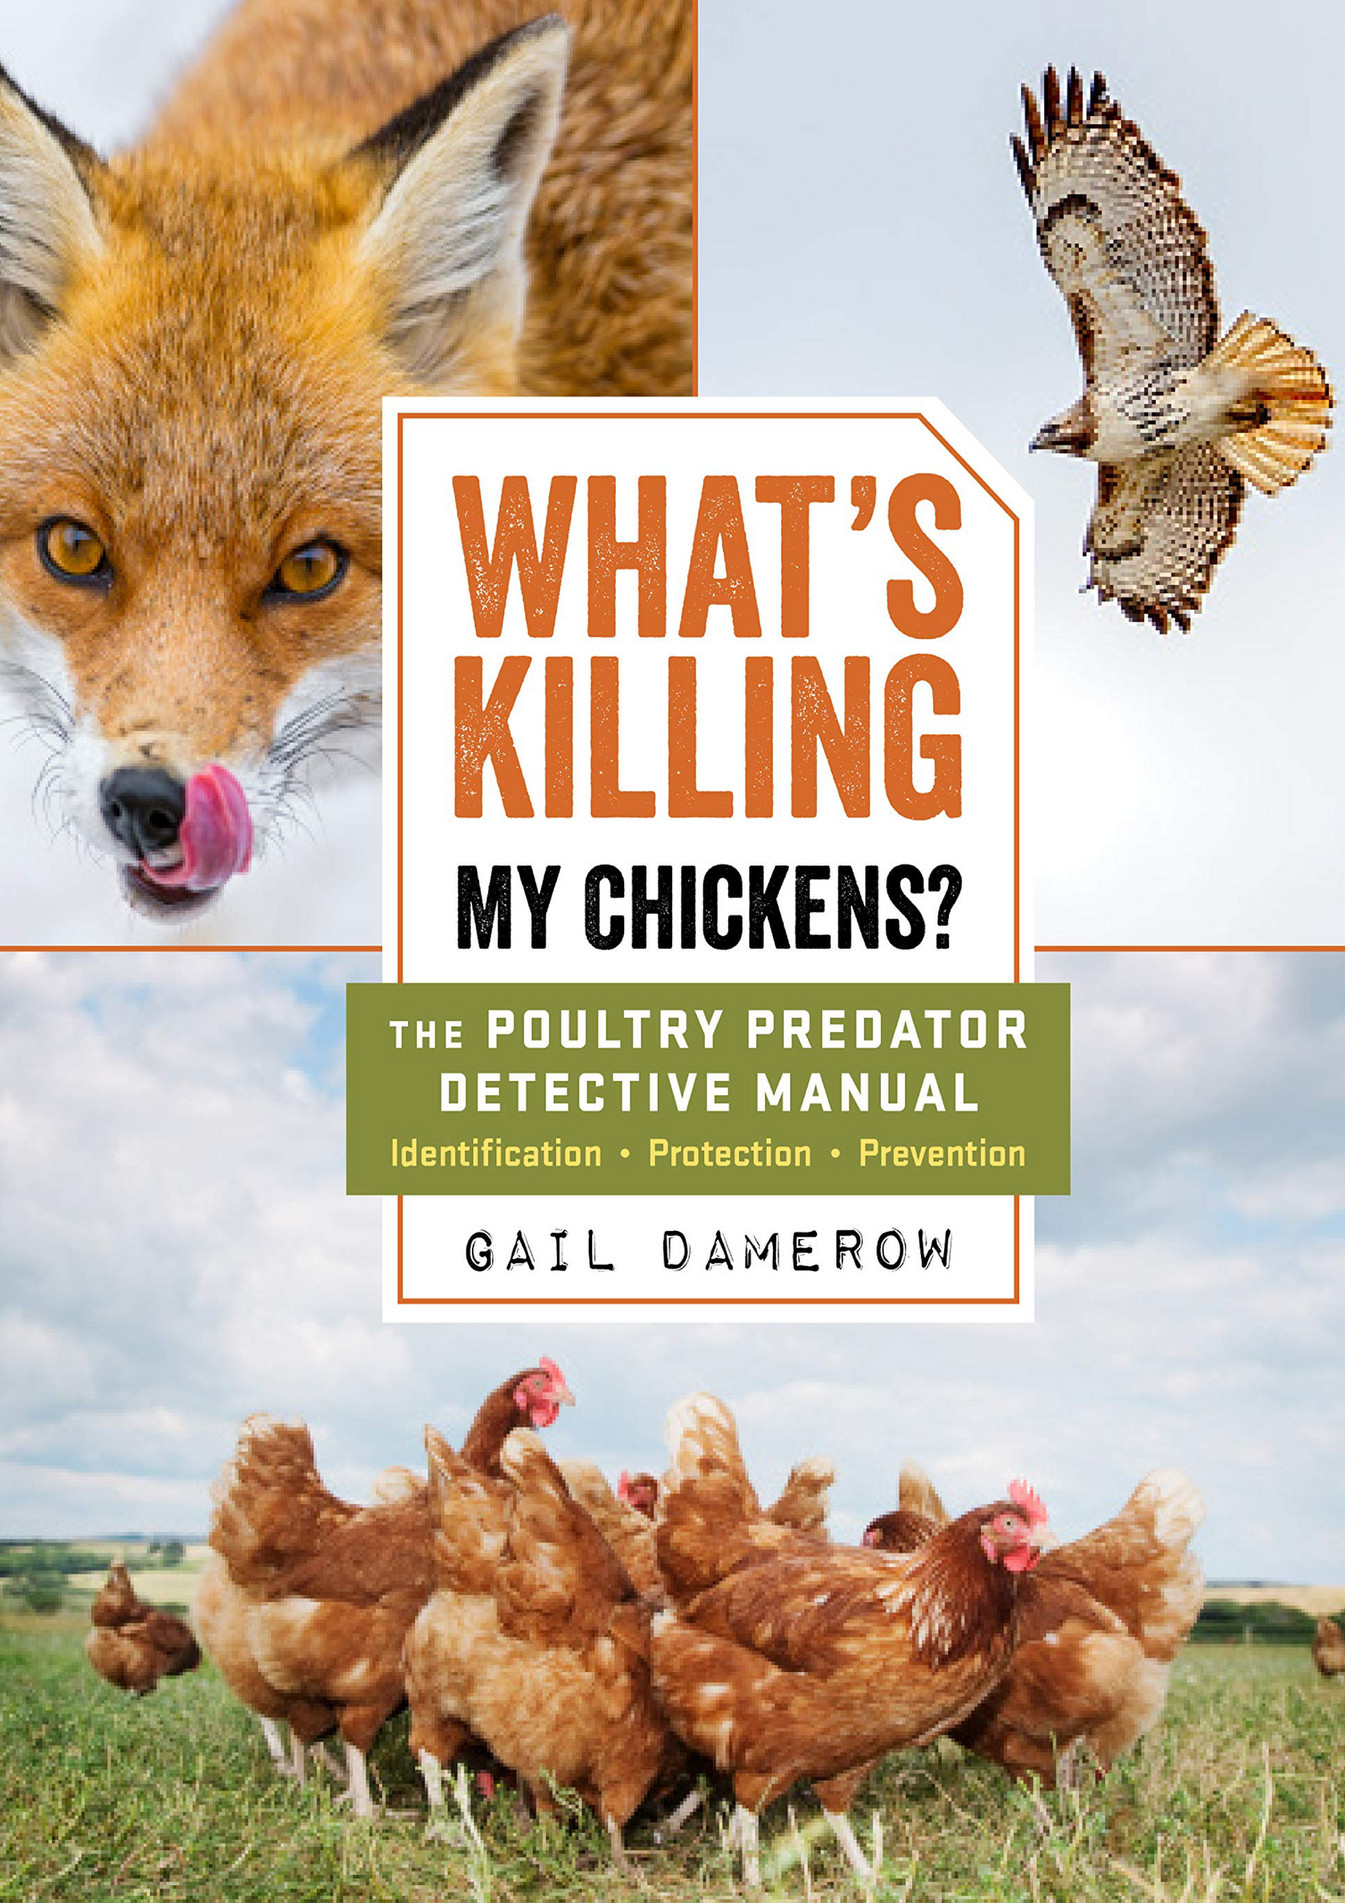 killing chickens essay